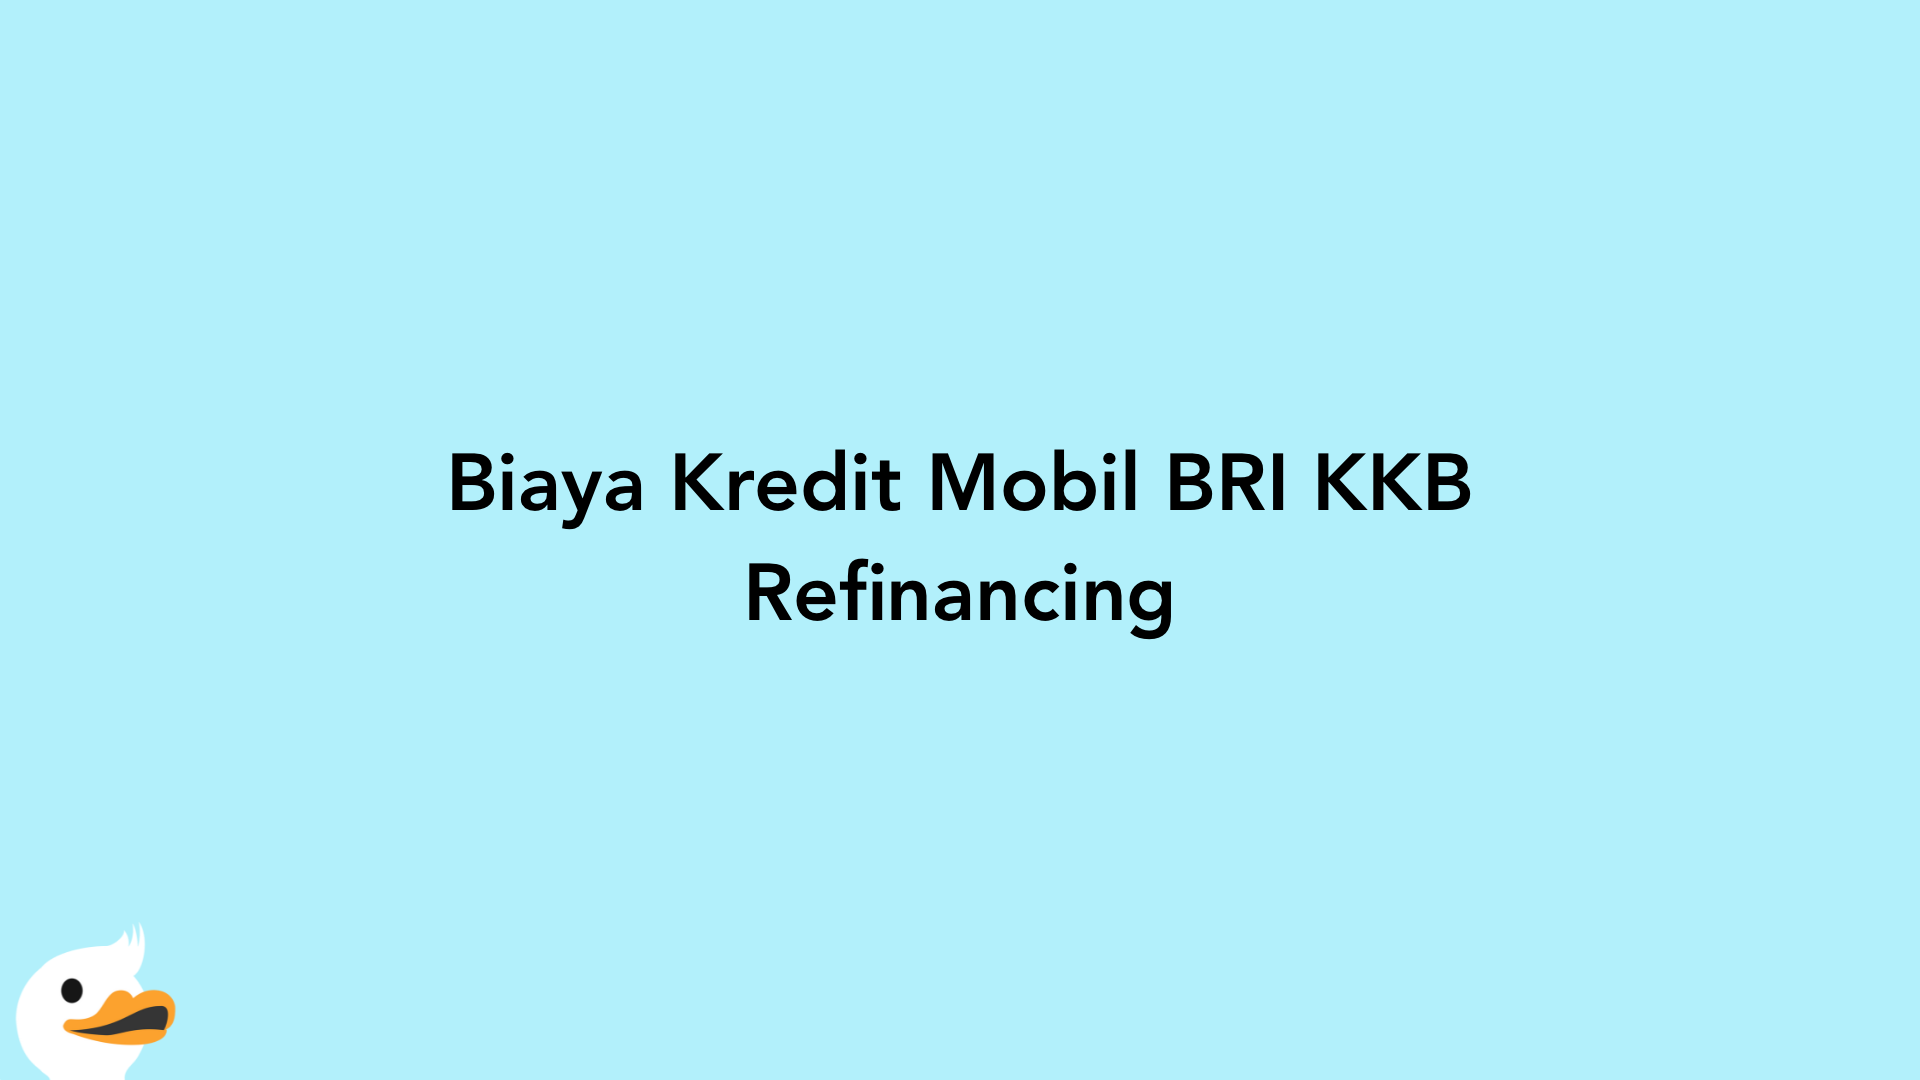 Biaya Kredit Mobil BRI KKB Refinancing